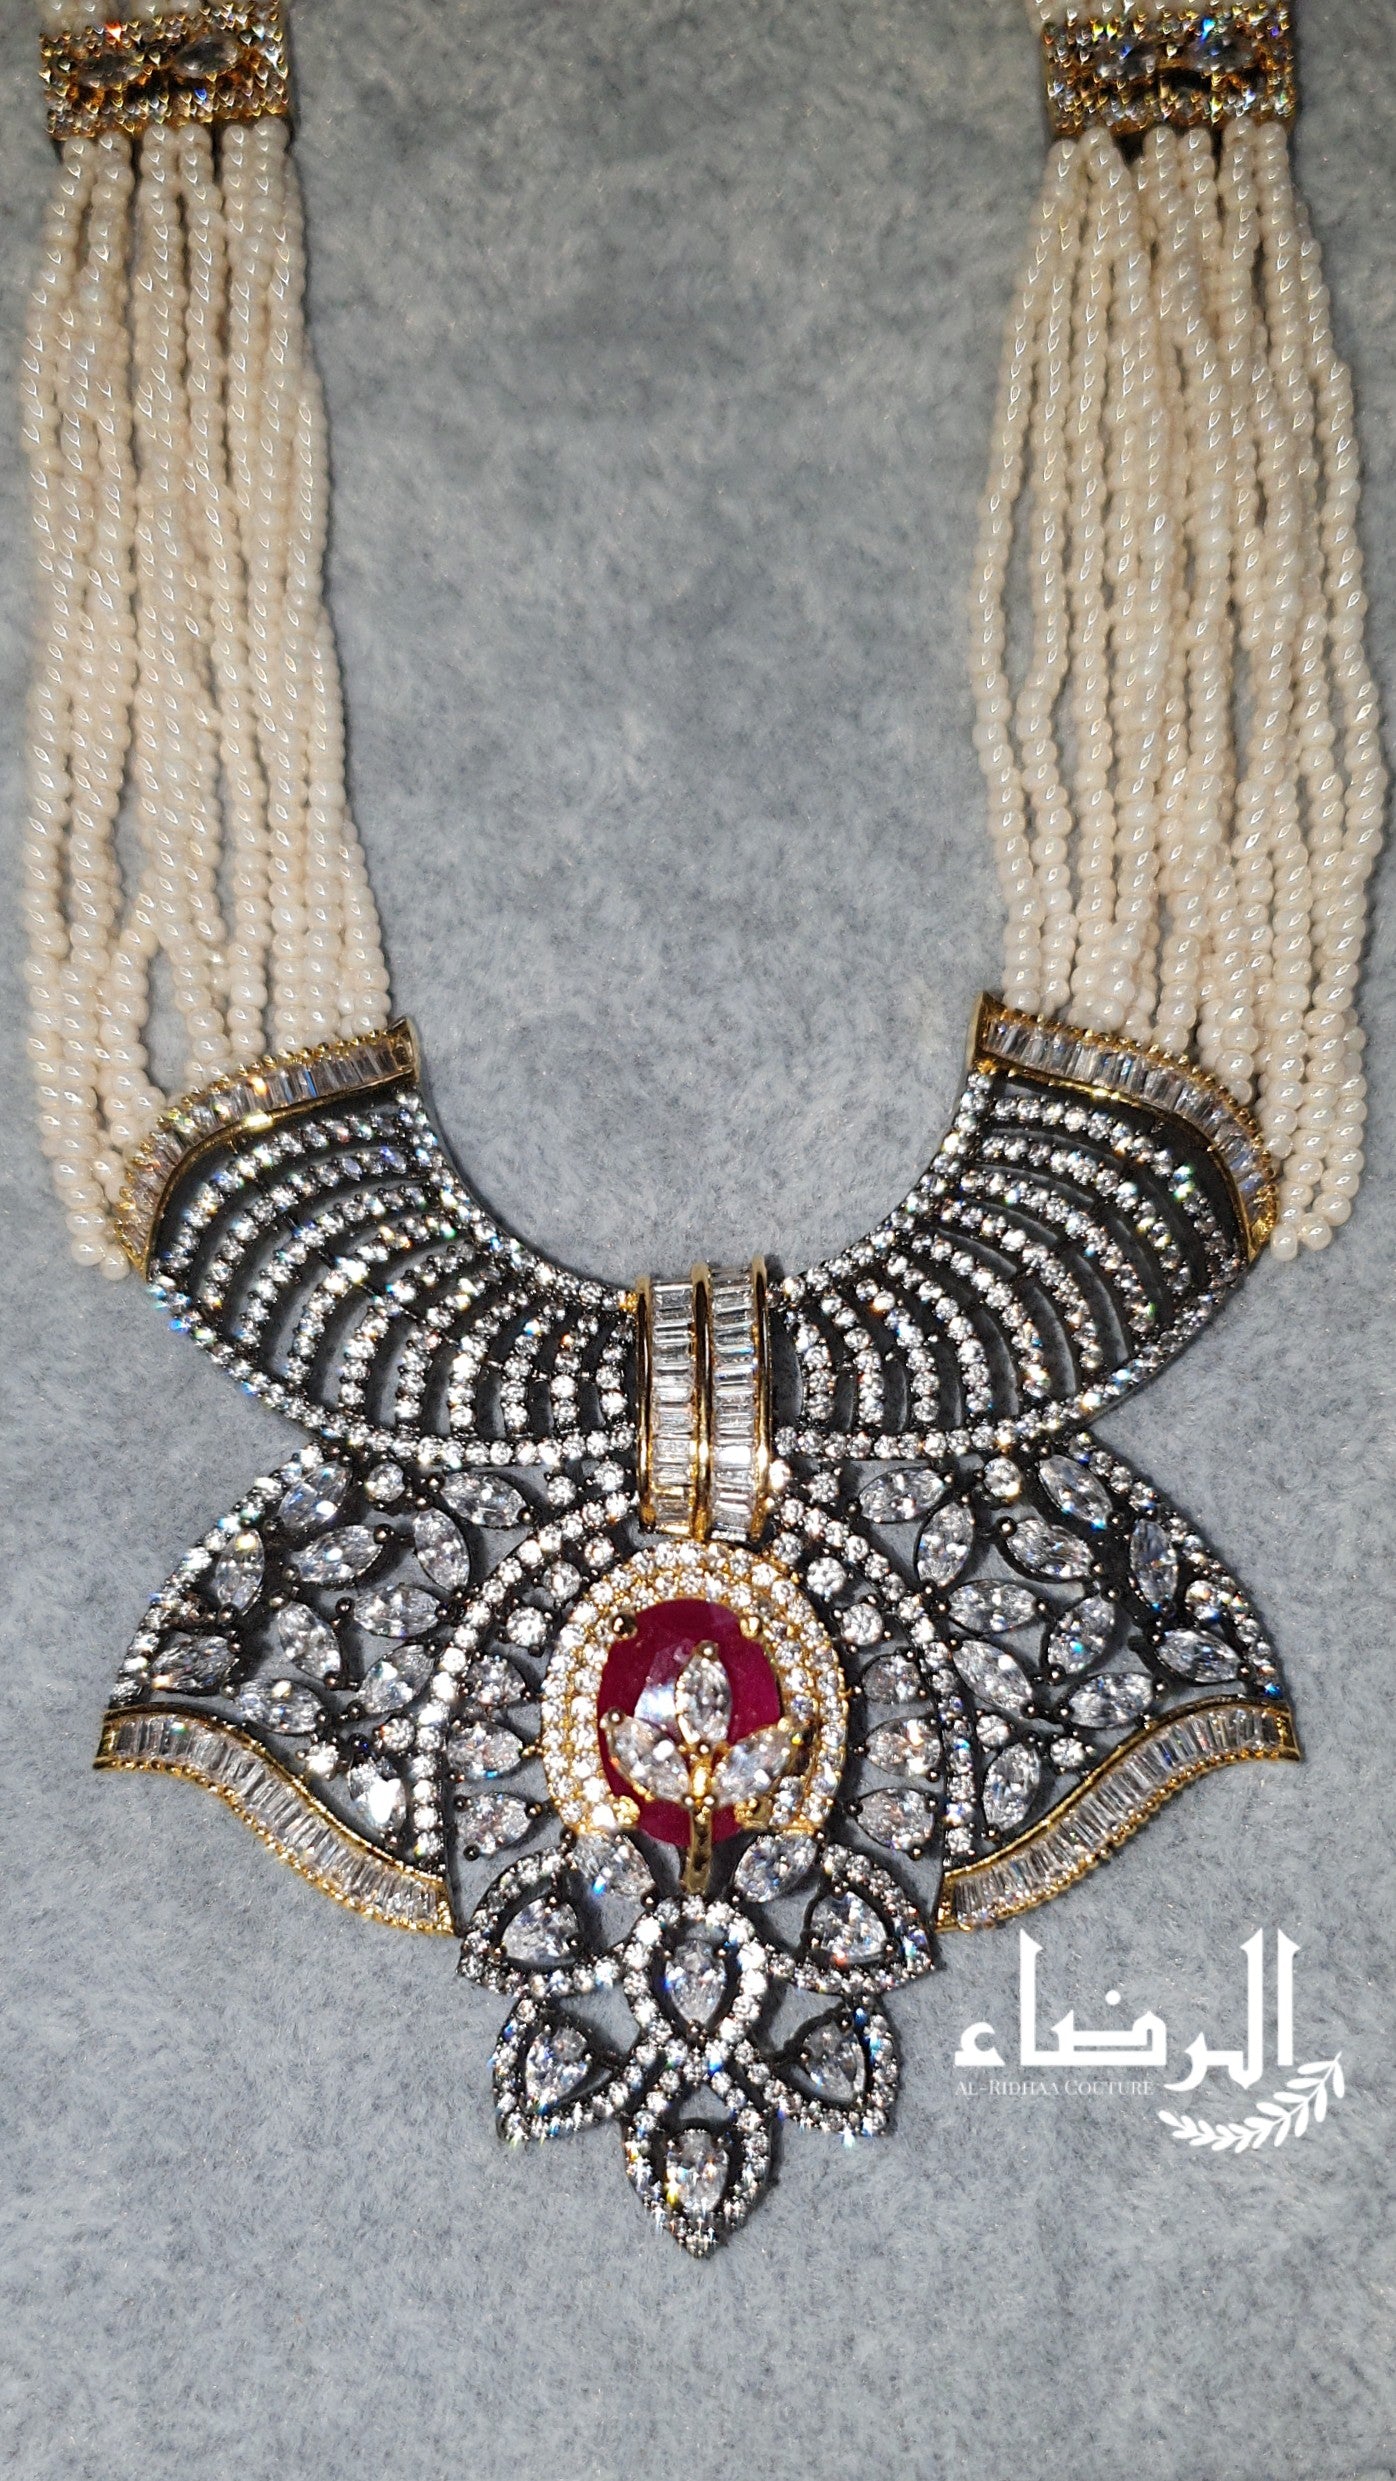 Noor Jahan - Necklaces